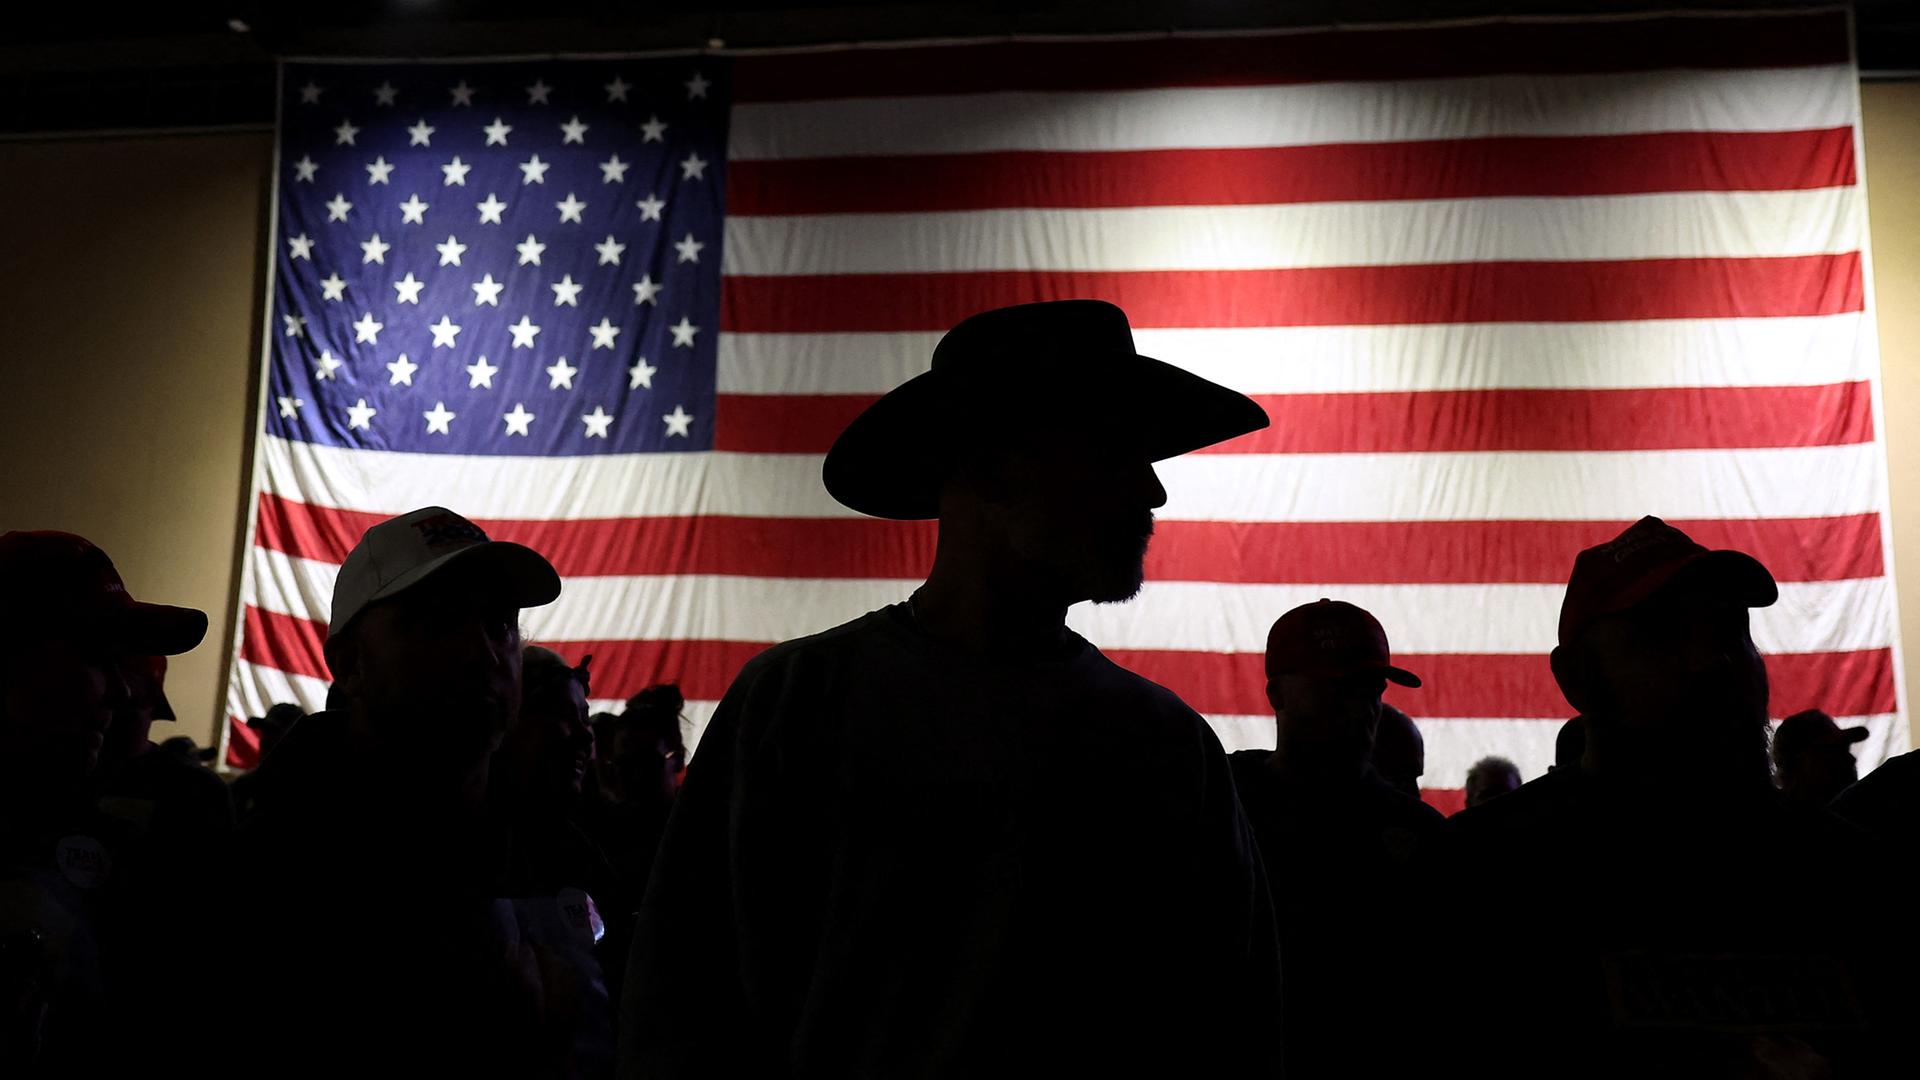 Die Silhouette eines Mannes mit Cowboyhut hebt sich dunkel vor der US-amerikanischen Flagge ab.